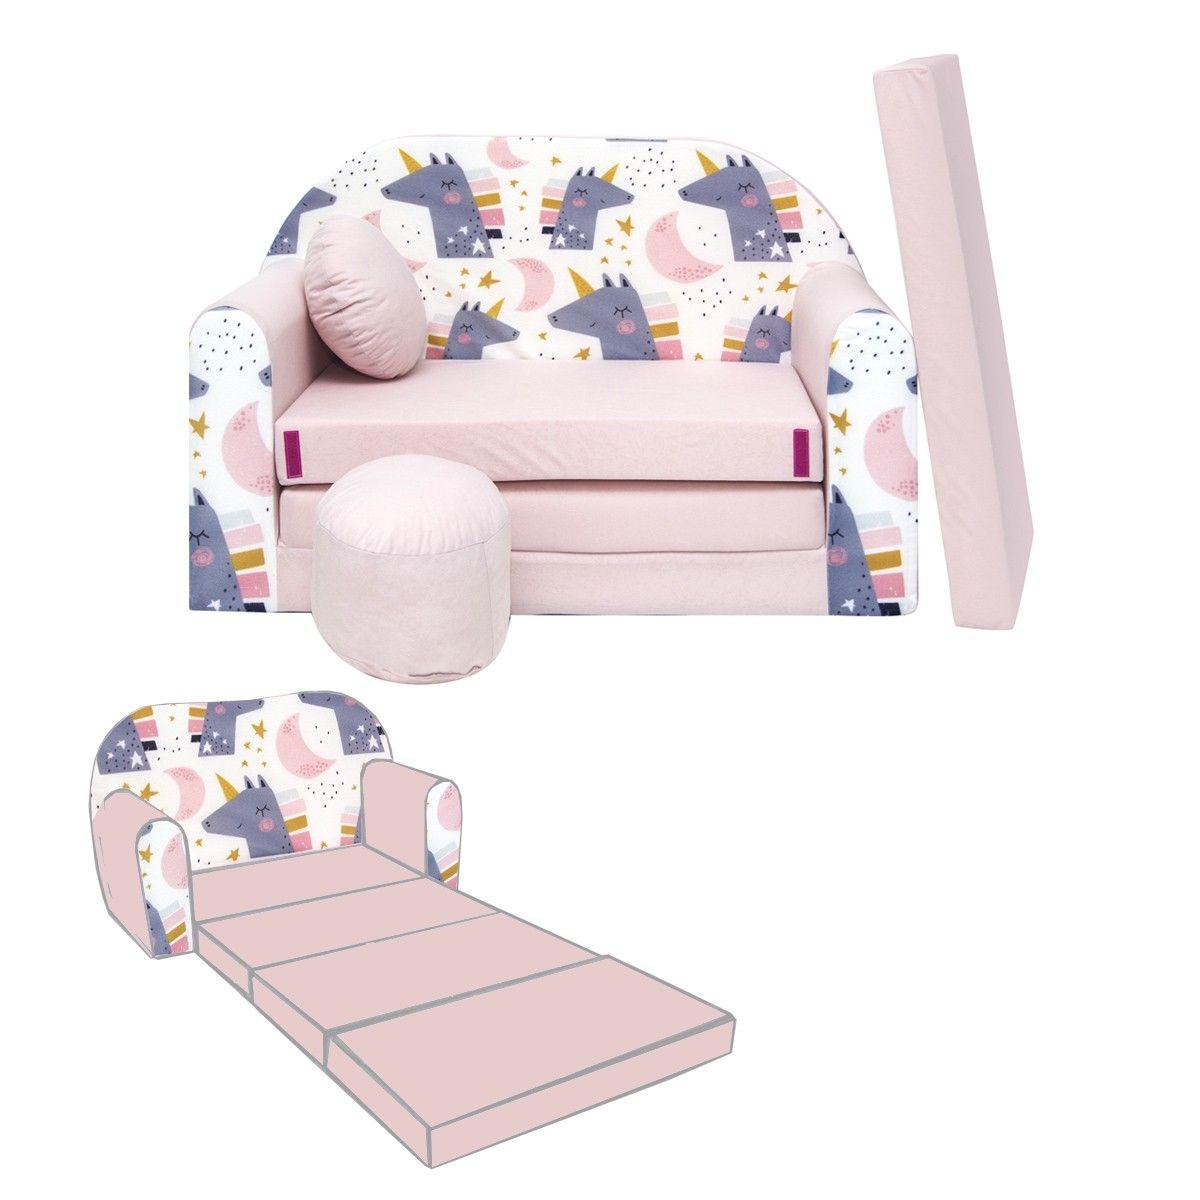 Nino canapé convertible lit pour enfant avec pouf et coussin oeko